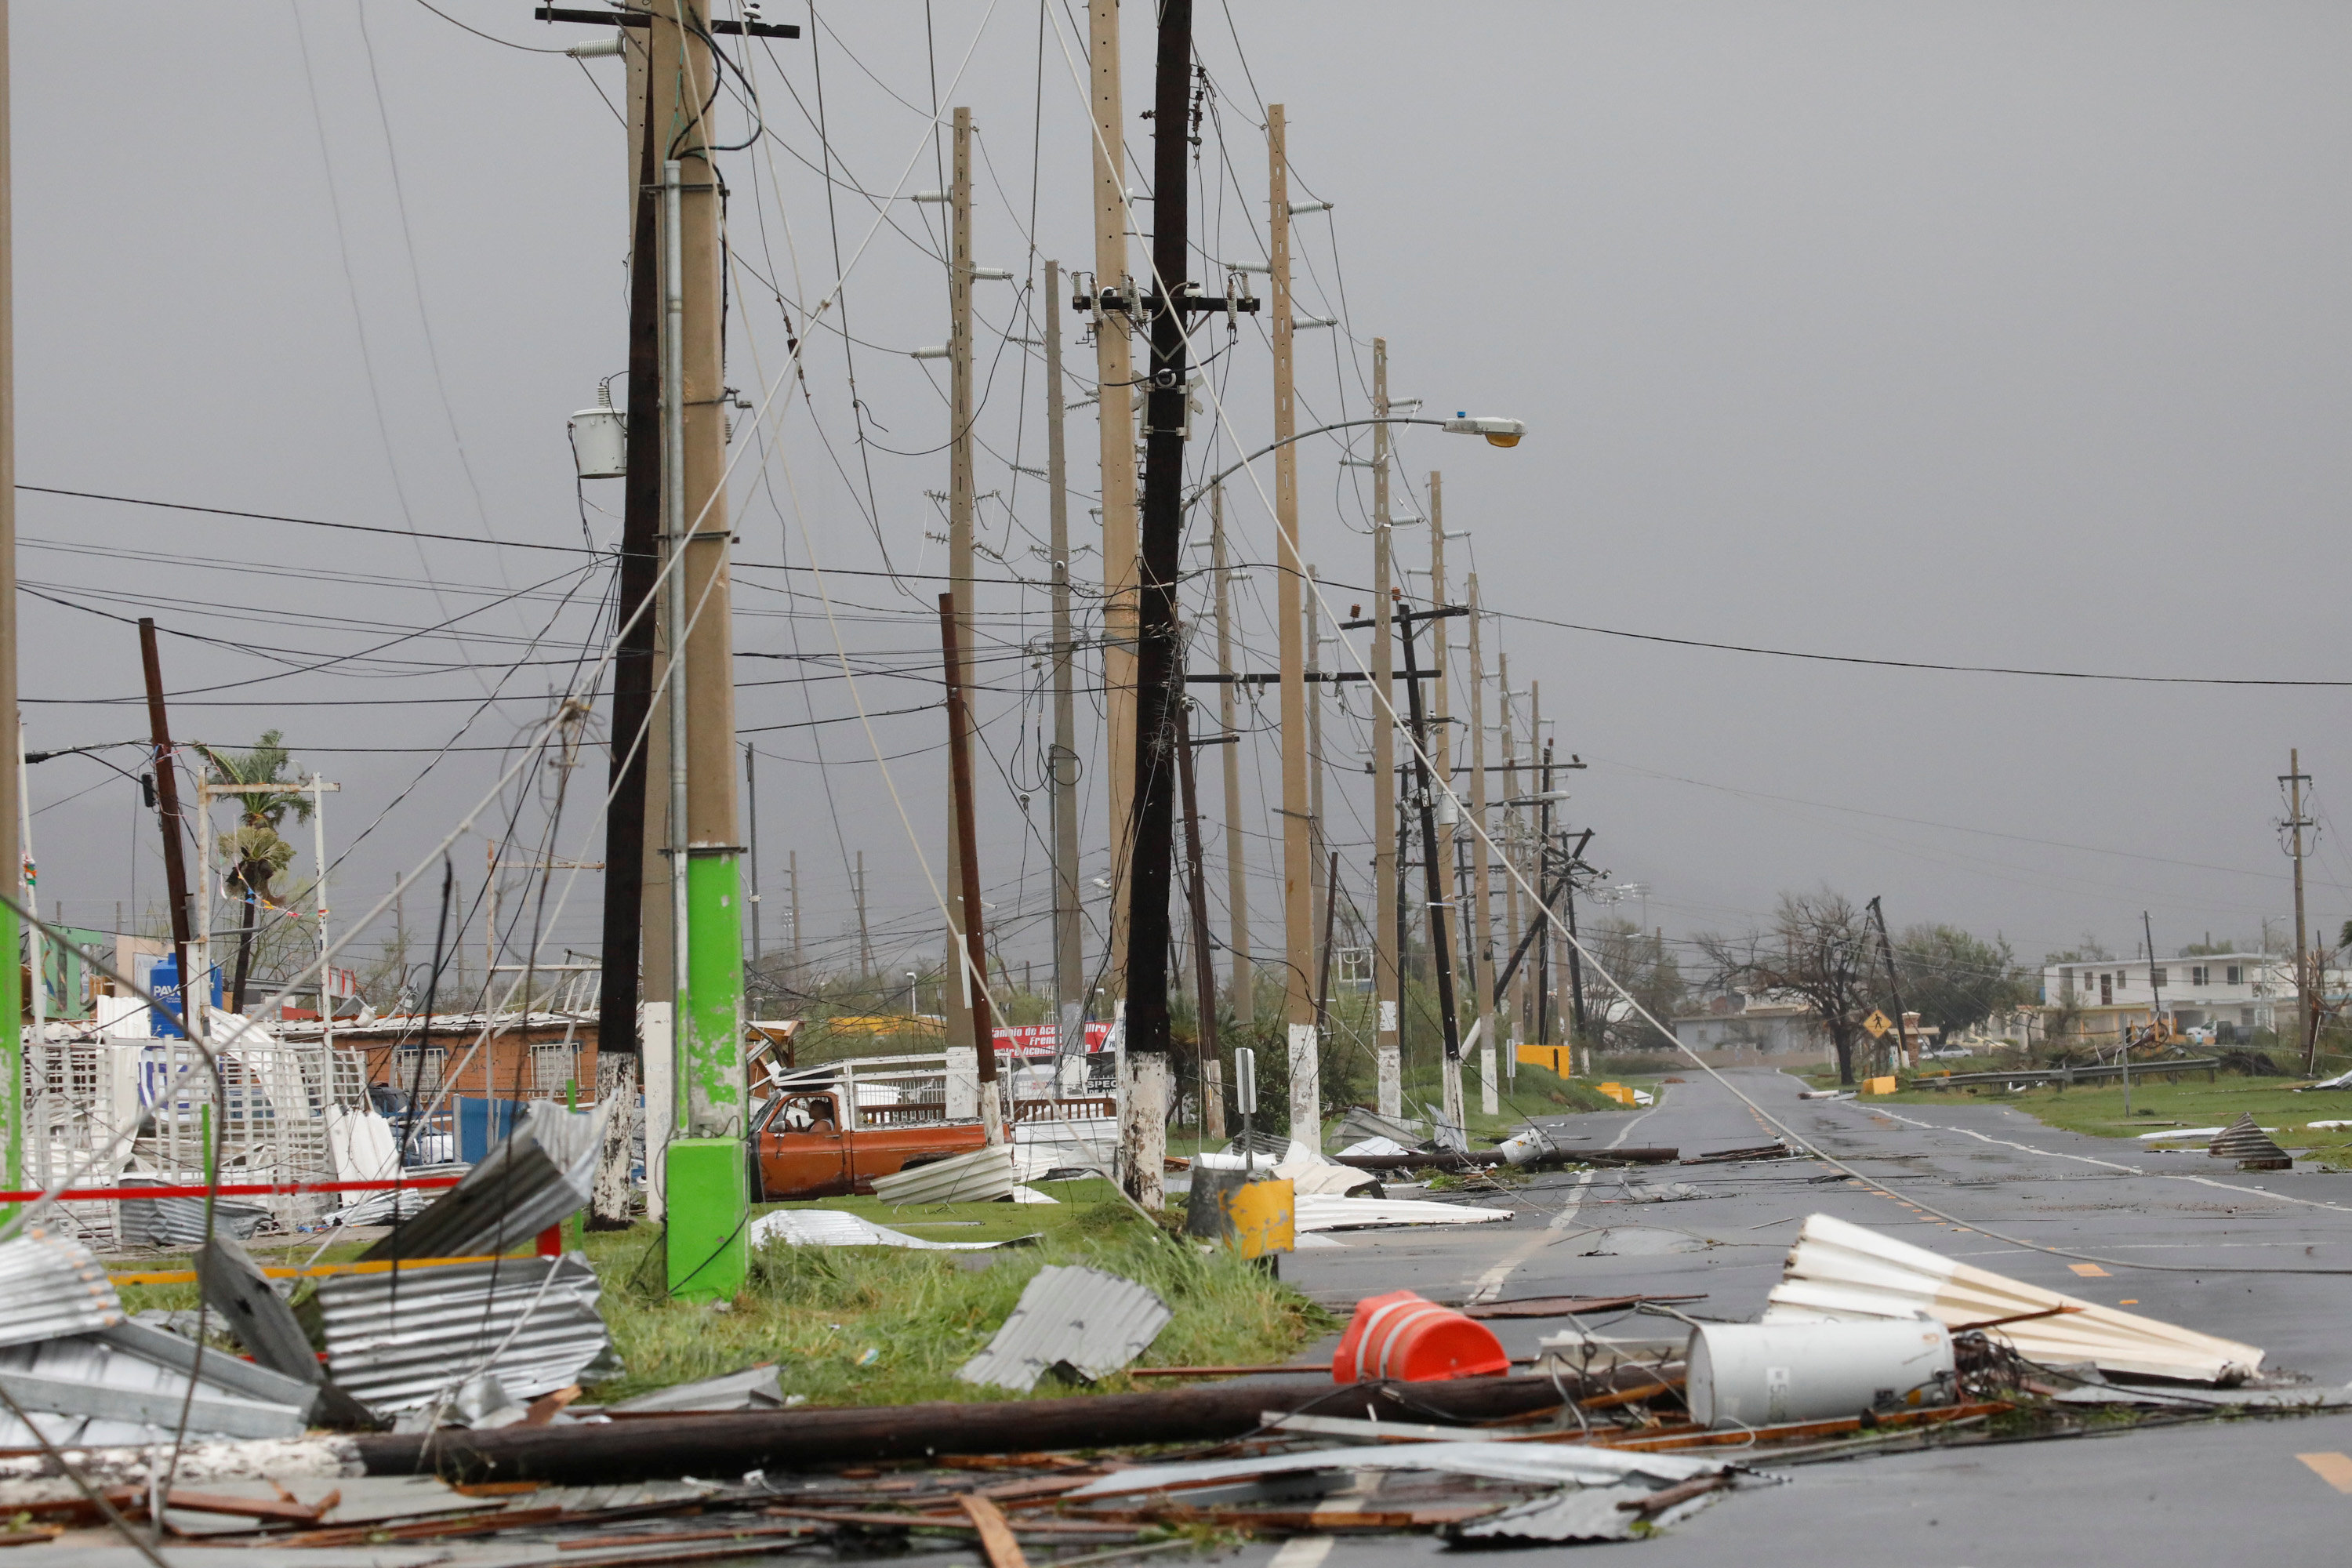 El pasó del huracán dejó el 100% de la isla sin energía eléctrica. (REUTERS/Carlos Garcia Rawlins)